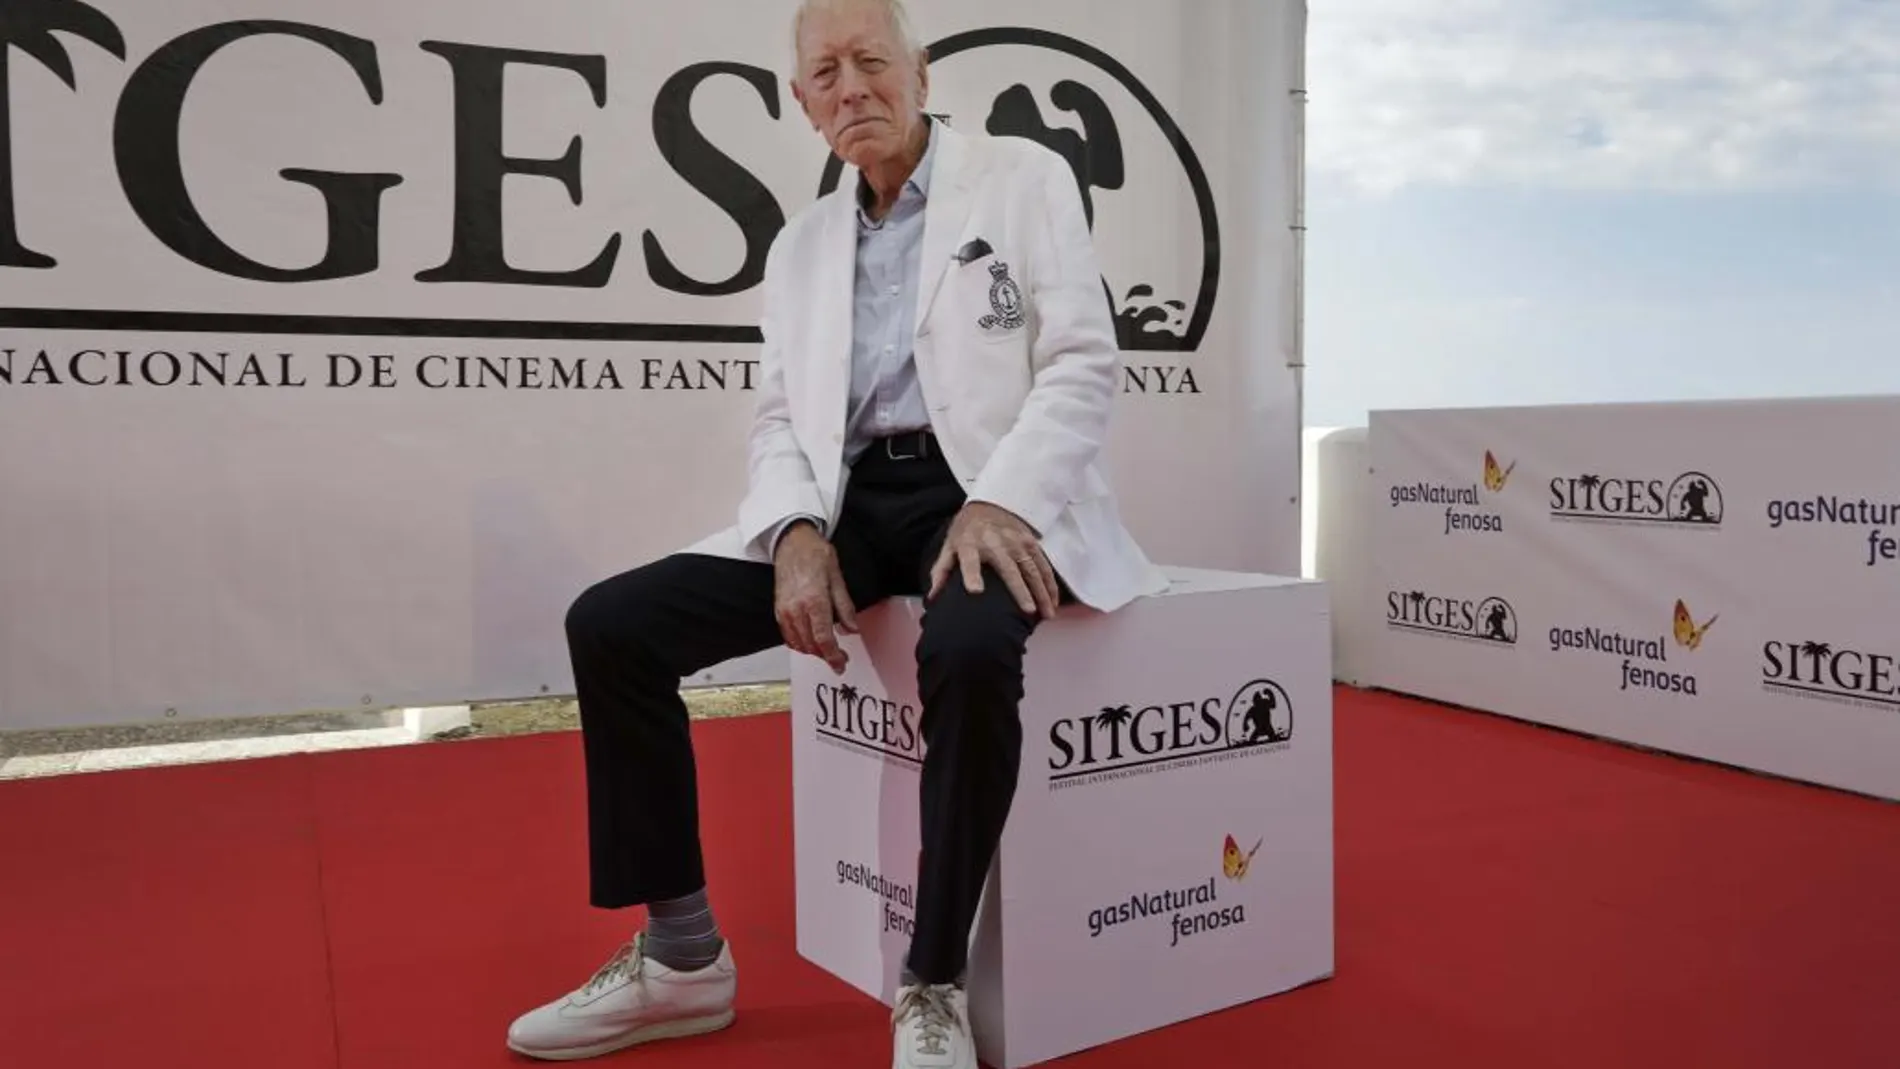 El actor sueco Max Von Sydow, que hoy recibe el Gran Premio Honorífico del Festival de Cine Fantástico de Sitges en la inauguración del certamen